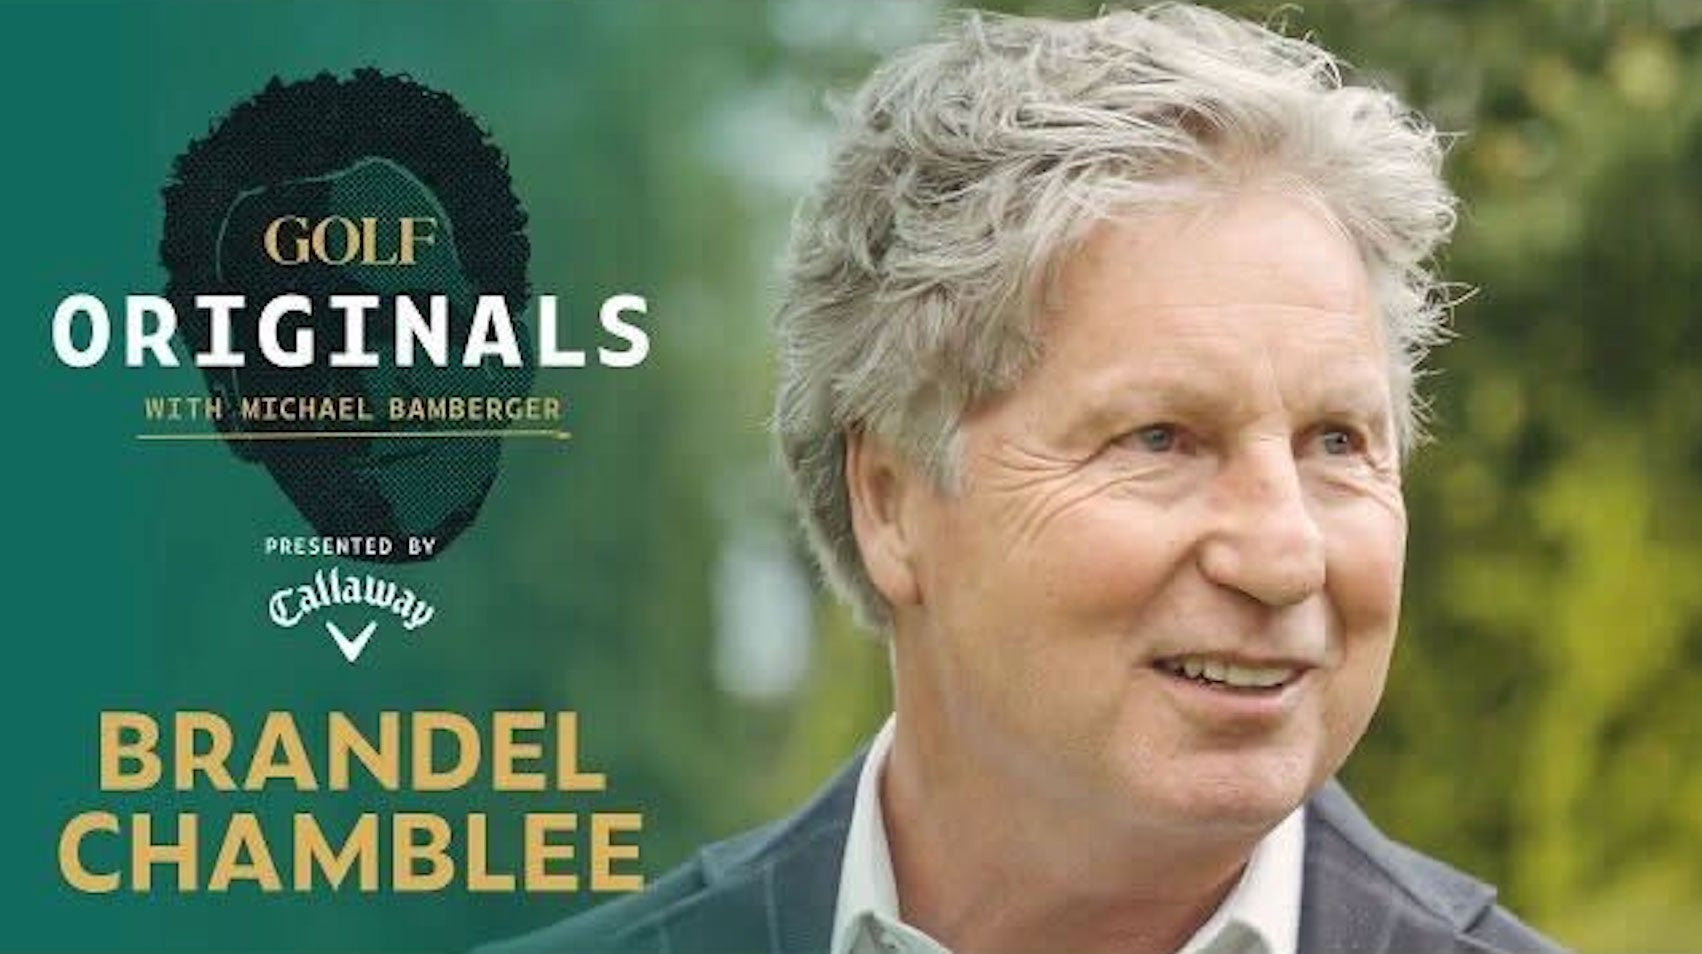 brandel chamblee is the subject of golf originals